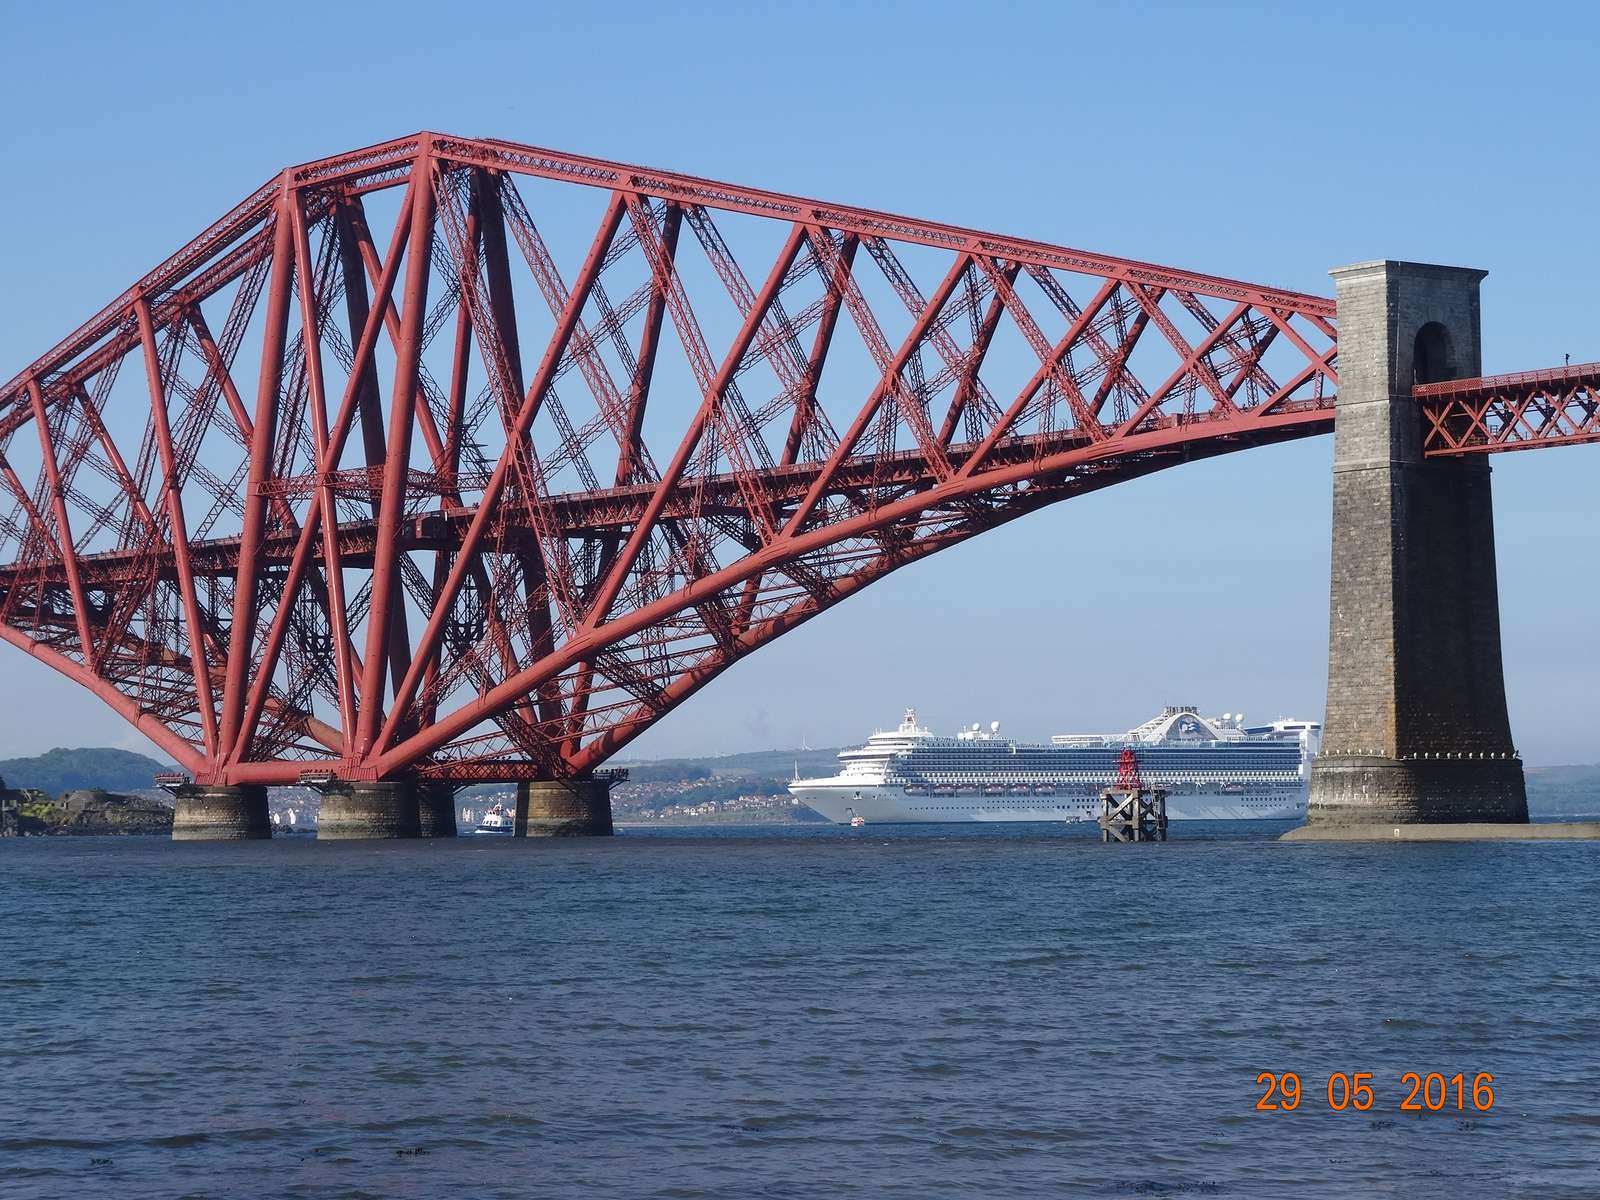 Escócia Forth Bridge puzzle online a partir de fotografia